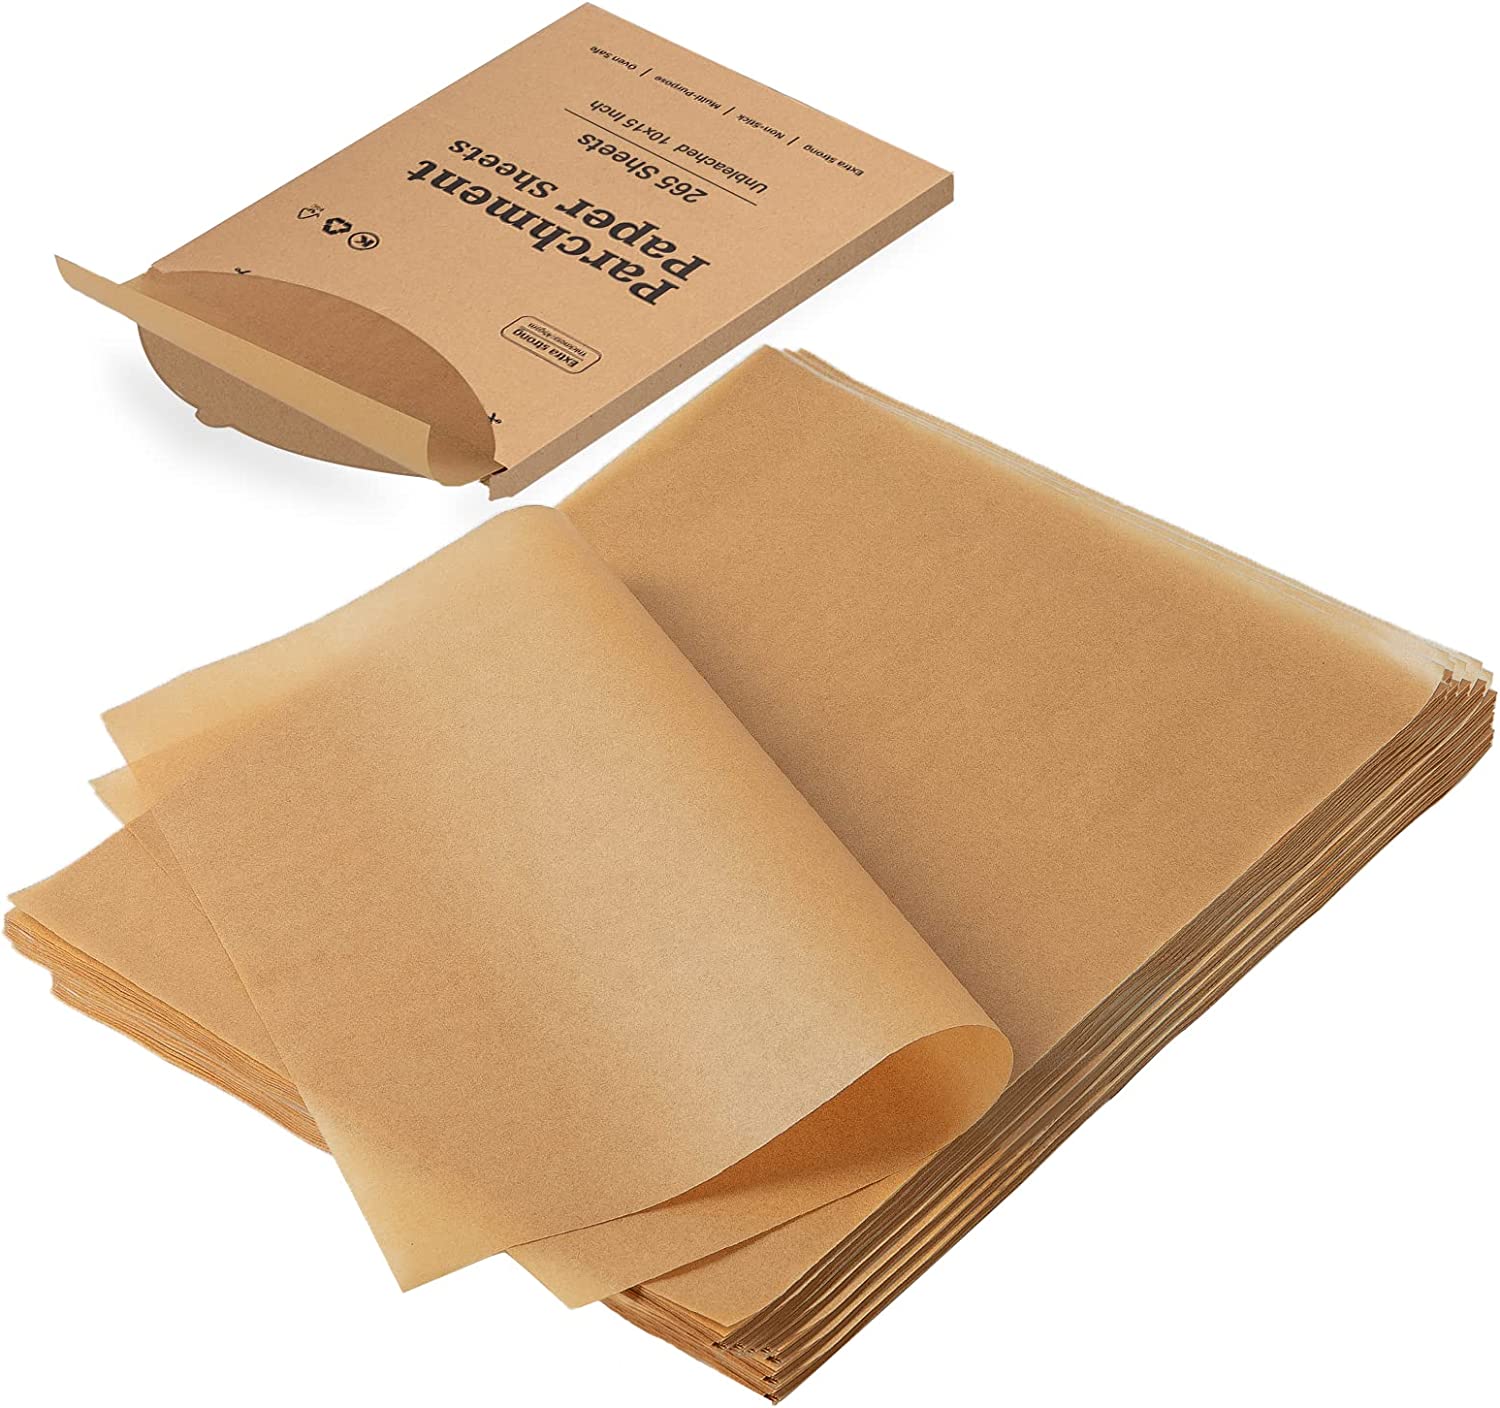 Katbite 265Pcs 10x15 inches Parchment Paper Sheets, Heavy Duty Unbleac